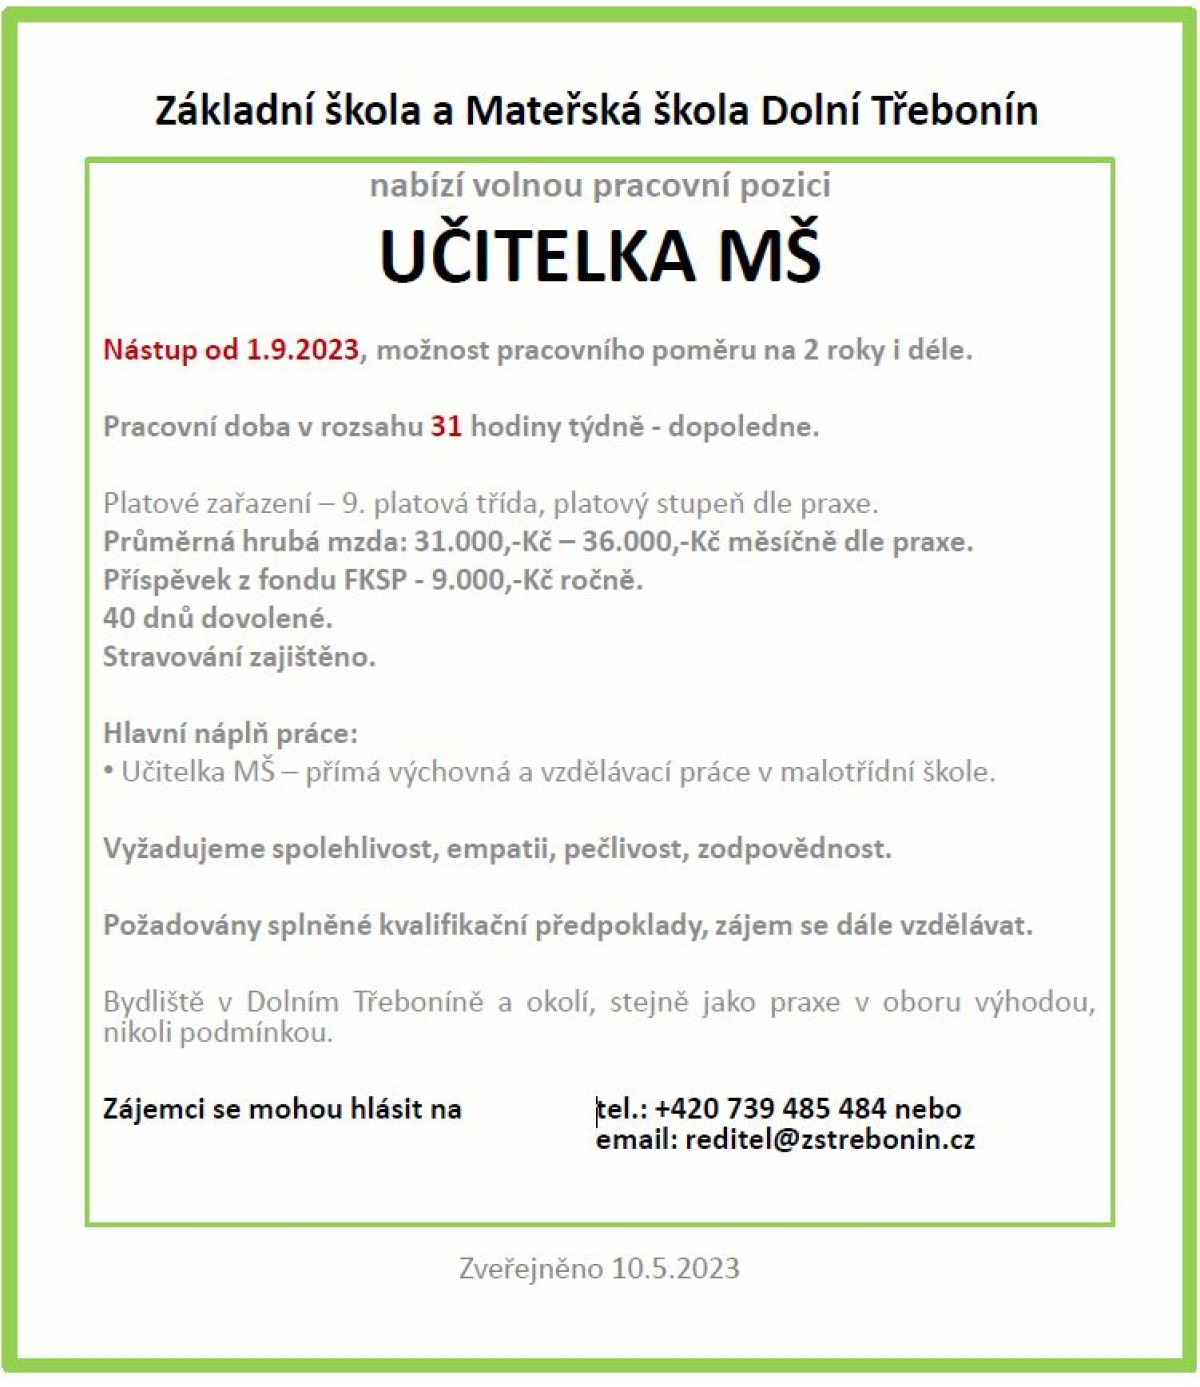 nabidka-volneho-pracovniho-mista-ucitelka-ms-od-1.9.2023.jpg